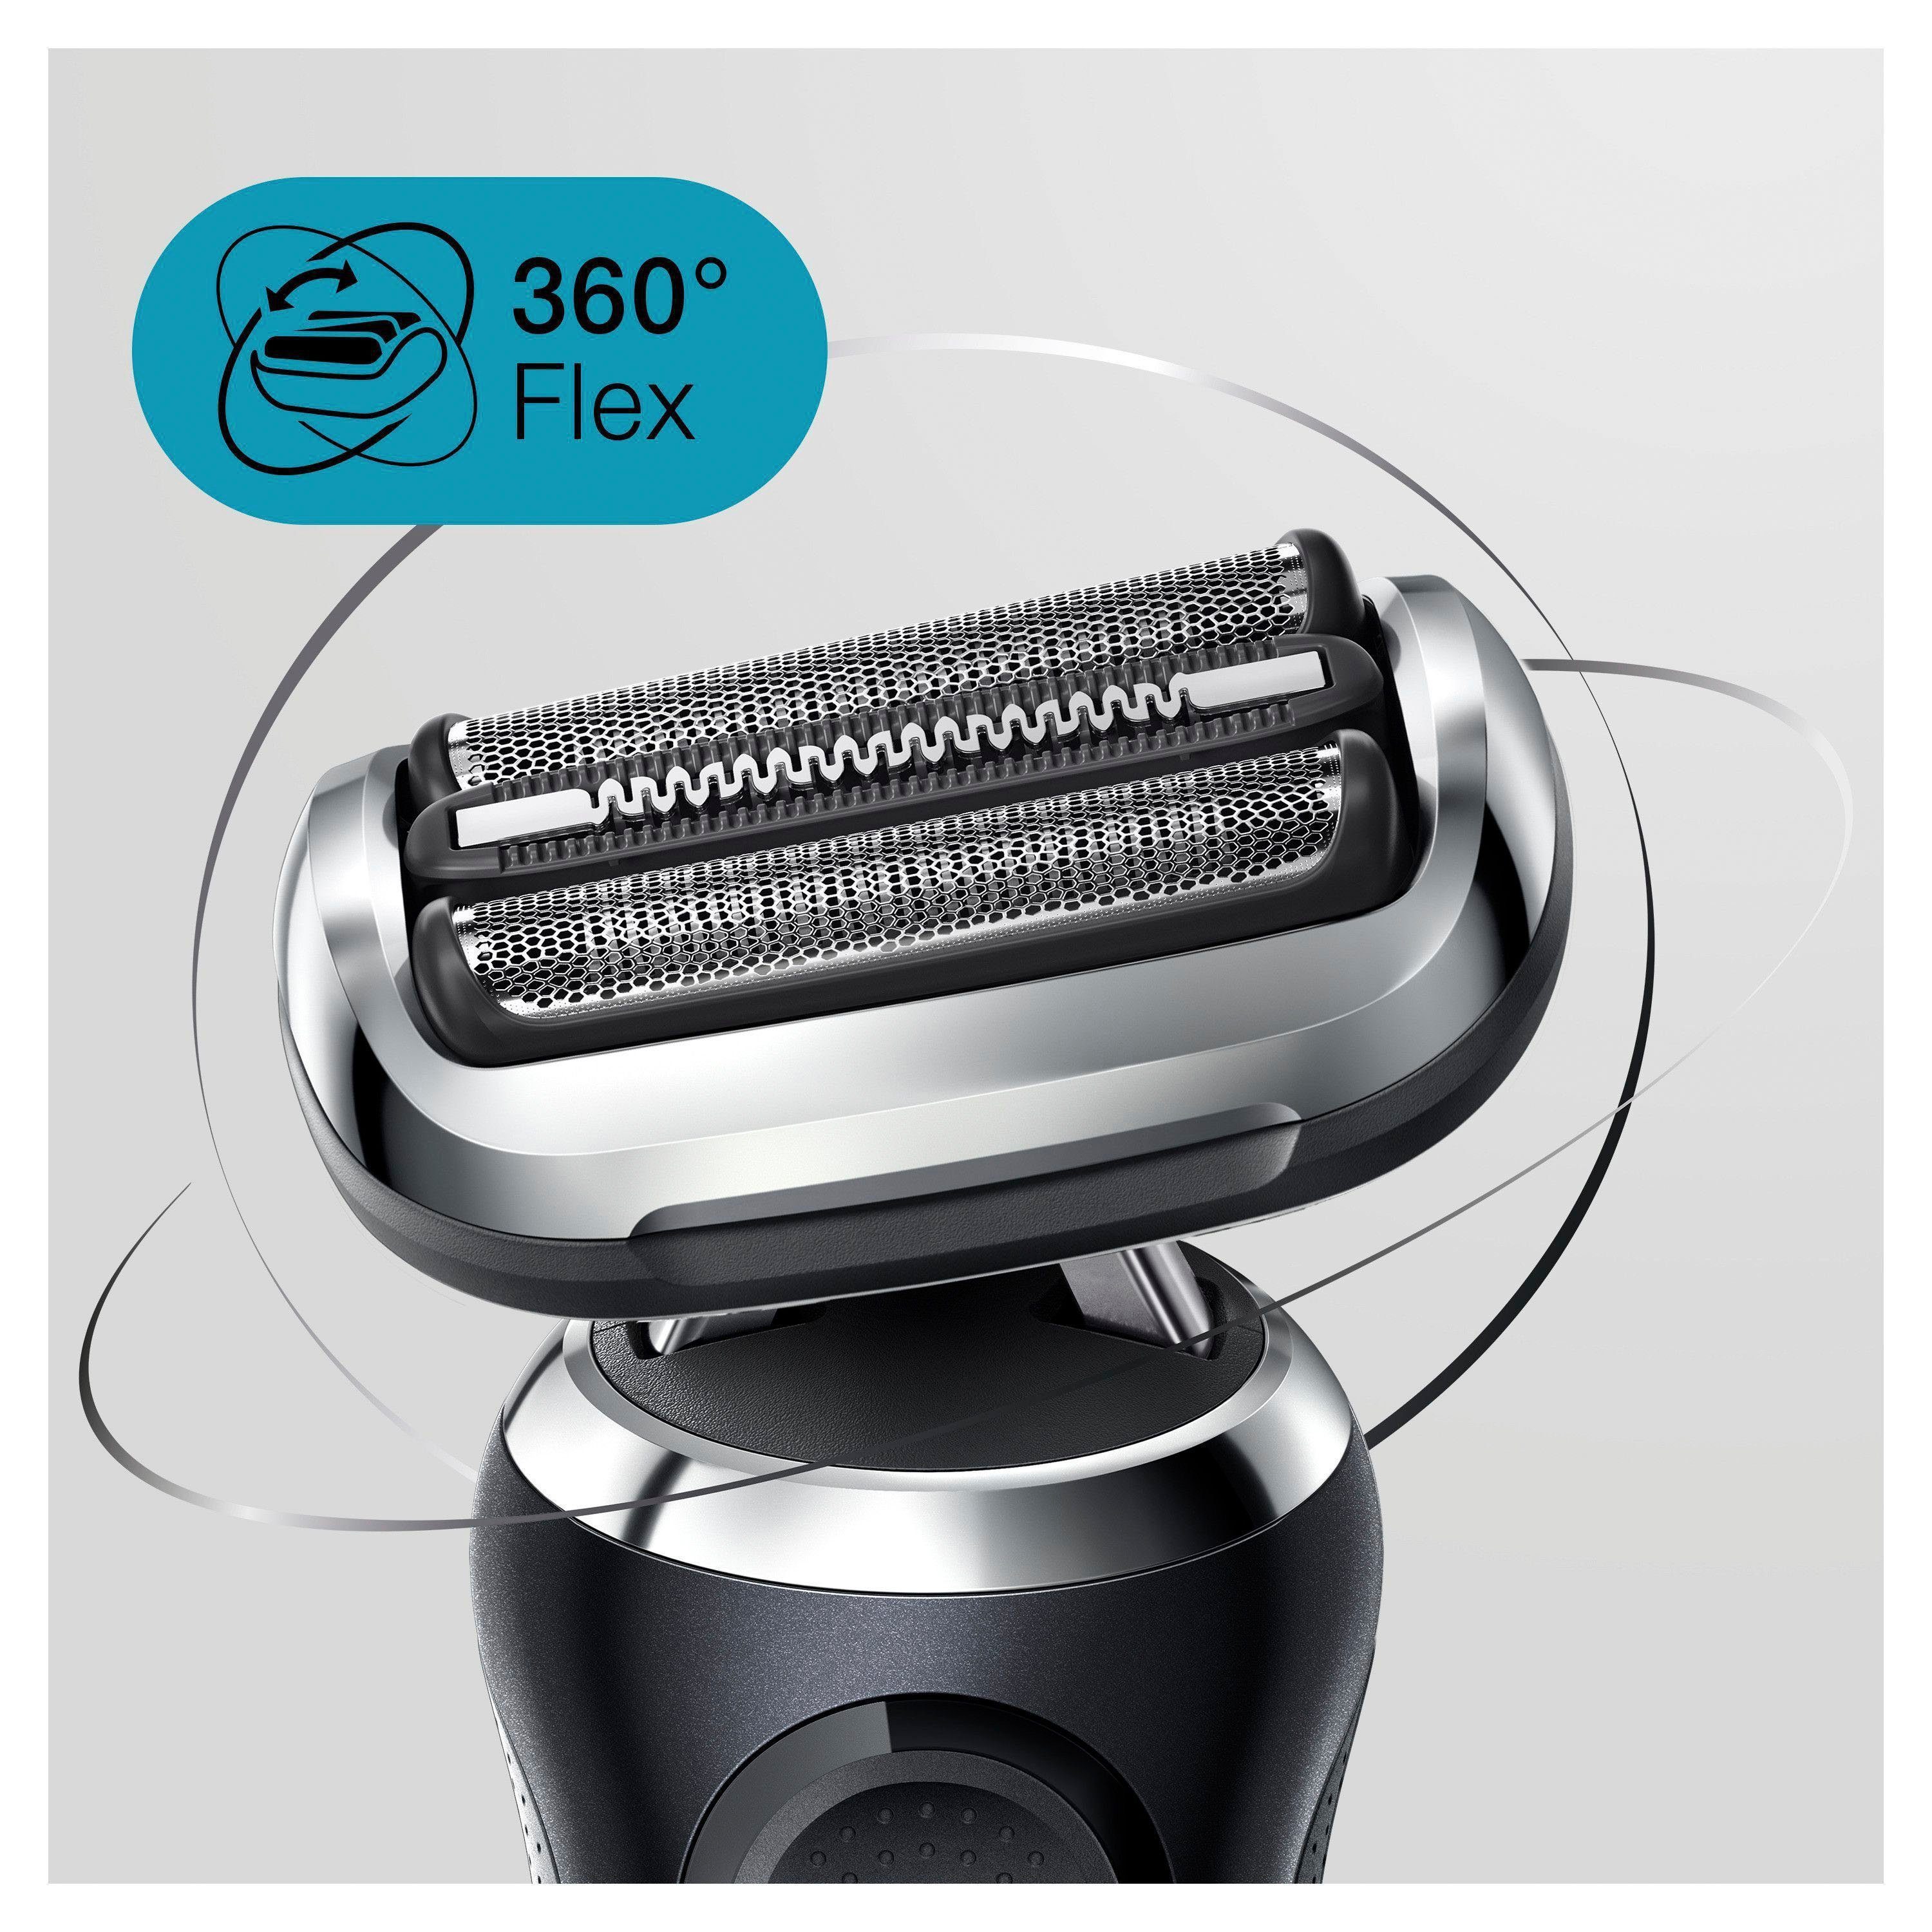 Series Braun Flex, 2, Elektrorasierer SmartClick-Präzisionstrimmer, Aufsätze: 360° 71-N1200s, Wet&Dry 7